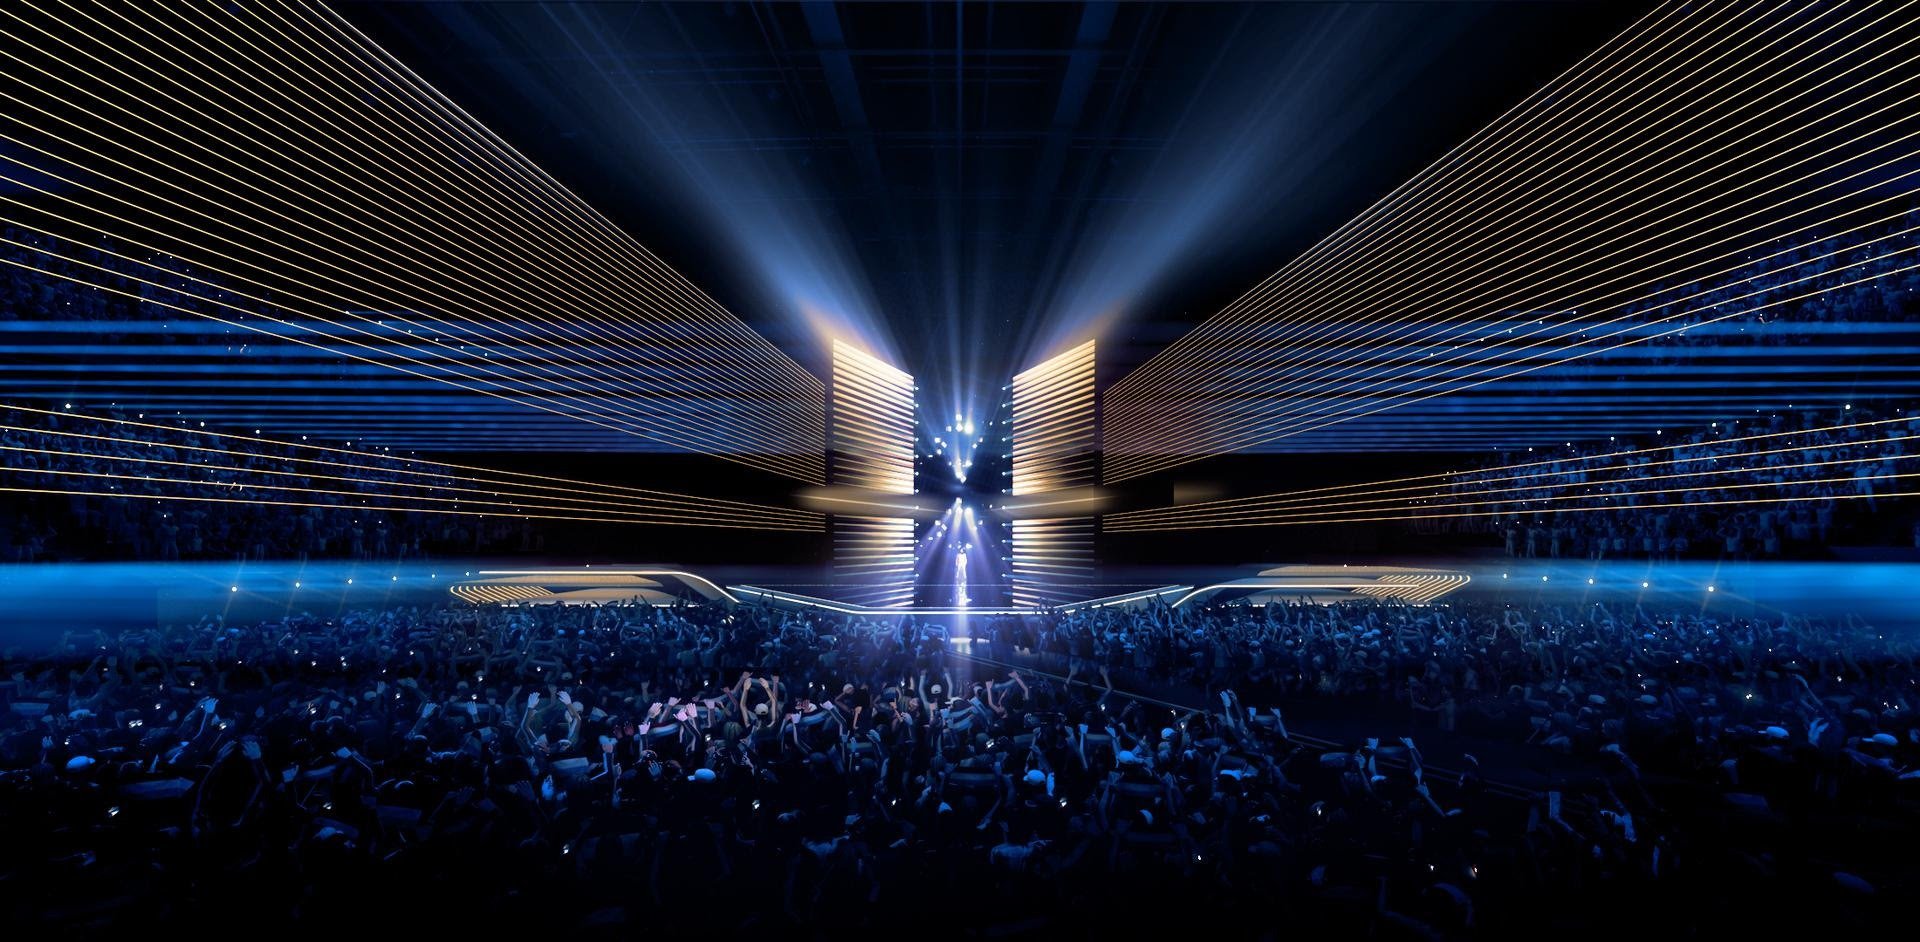 A 2020-as Eurovíziós Dalfesztivál színpada Florian Weider tervei alapján - az NPO, a NOS és AVROTROS grafikája